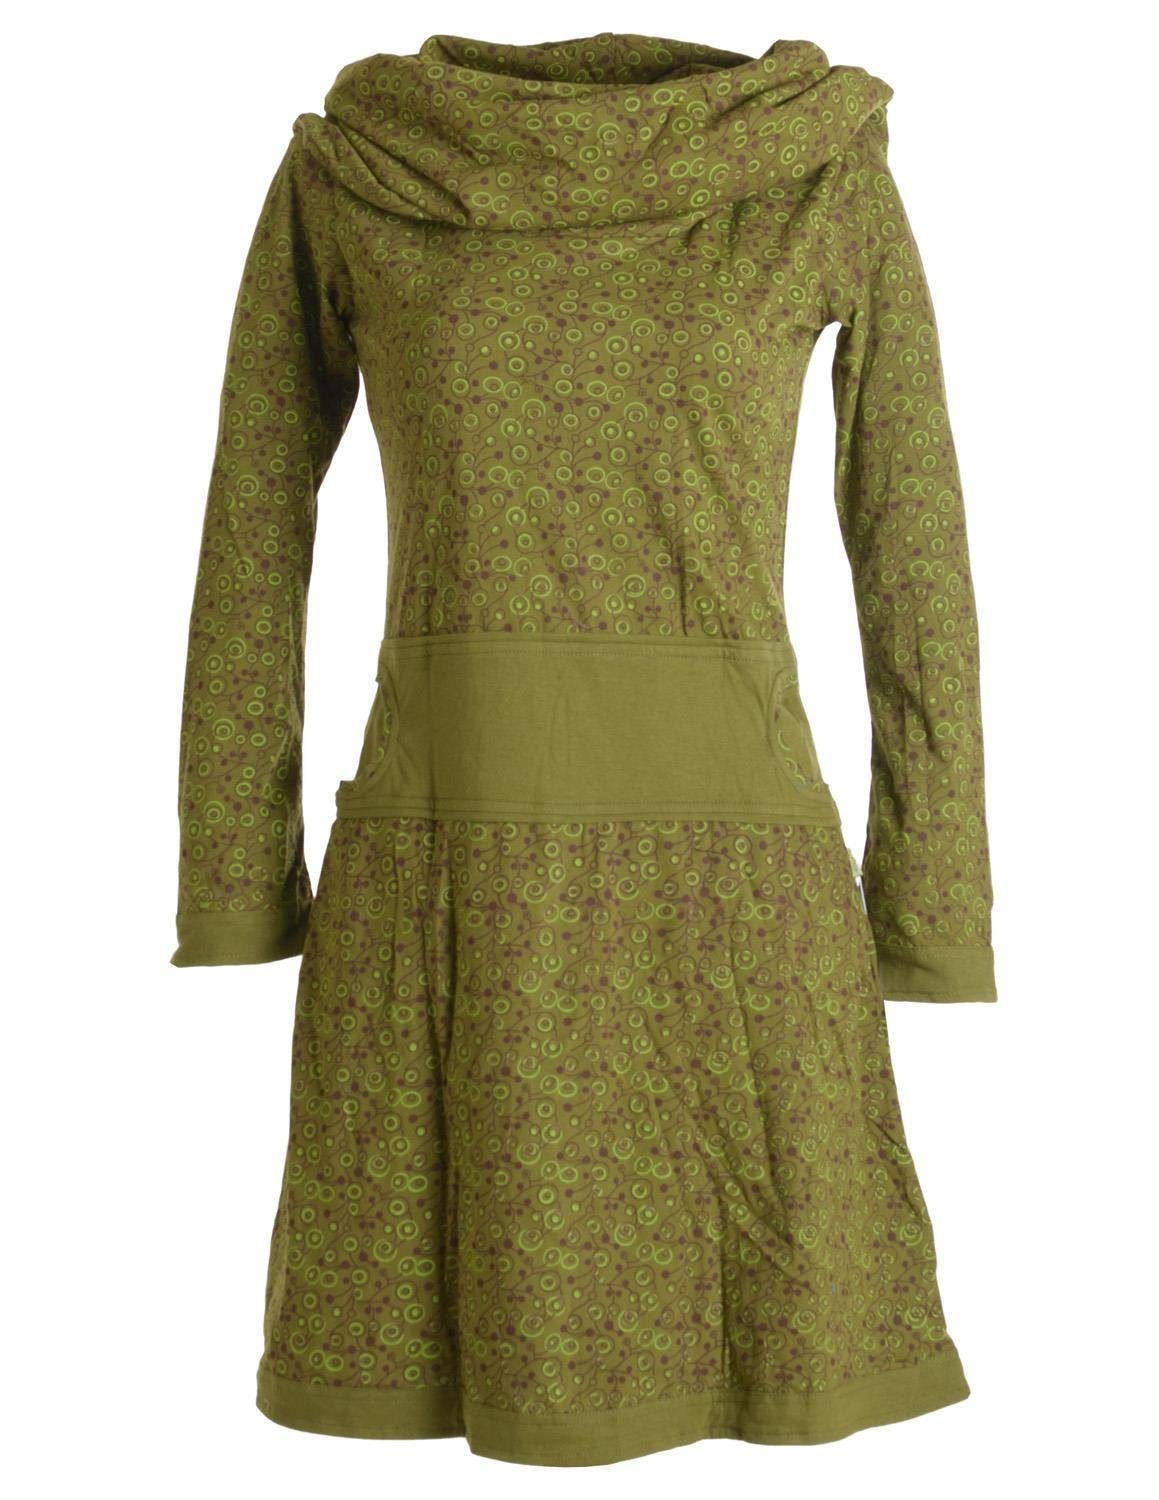 Vishes Jerseykleid Bedrucktes Kleid aus Baumwolle mit Schalkragen Ethno, Goa, Boho, Hippie Style olive